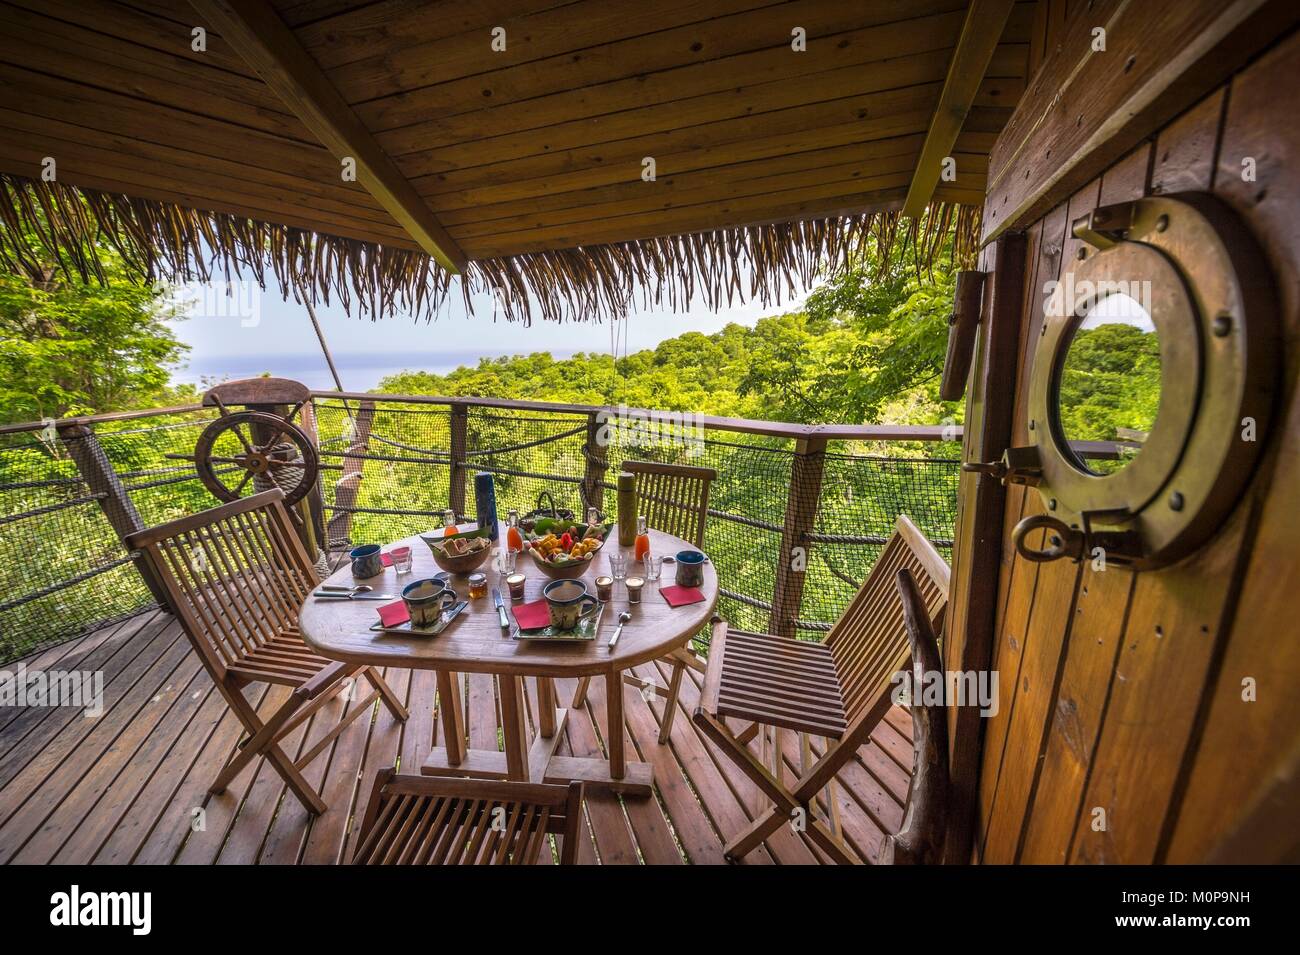 Frankreich, Karibik, Kleine Antillen, Guadeloupe, Basse-Terre, Vieux Habitants, auf den Höhen der Stadt, die Behausung Getz, alten kolonialen Haus umgewandelt in ein Bett und ein Frühstück mit seinen Häusern in den Bäumen, hier das Frühstück in der Hütte der Pirate serviert. Stockfoto